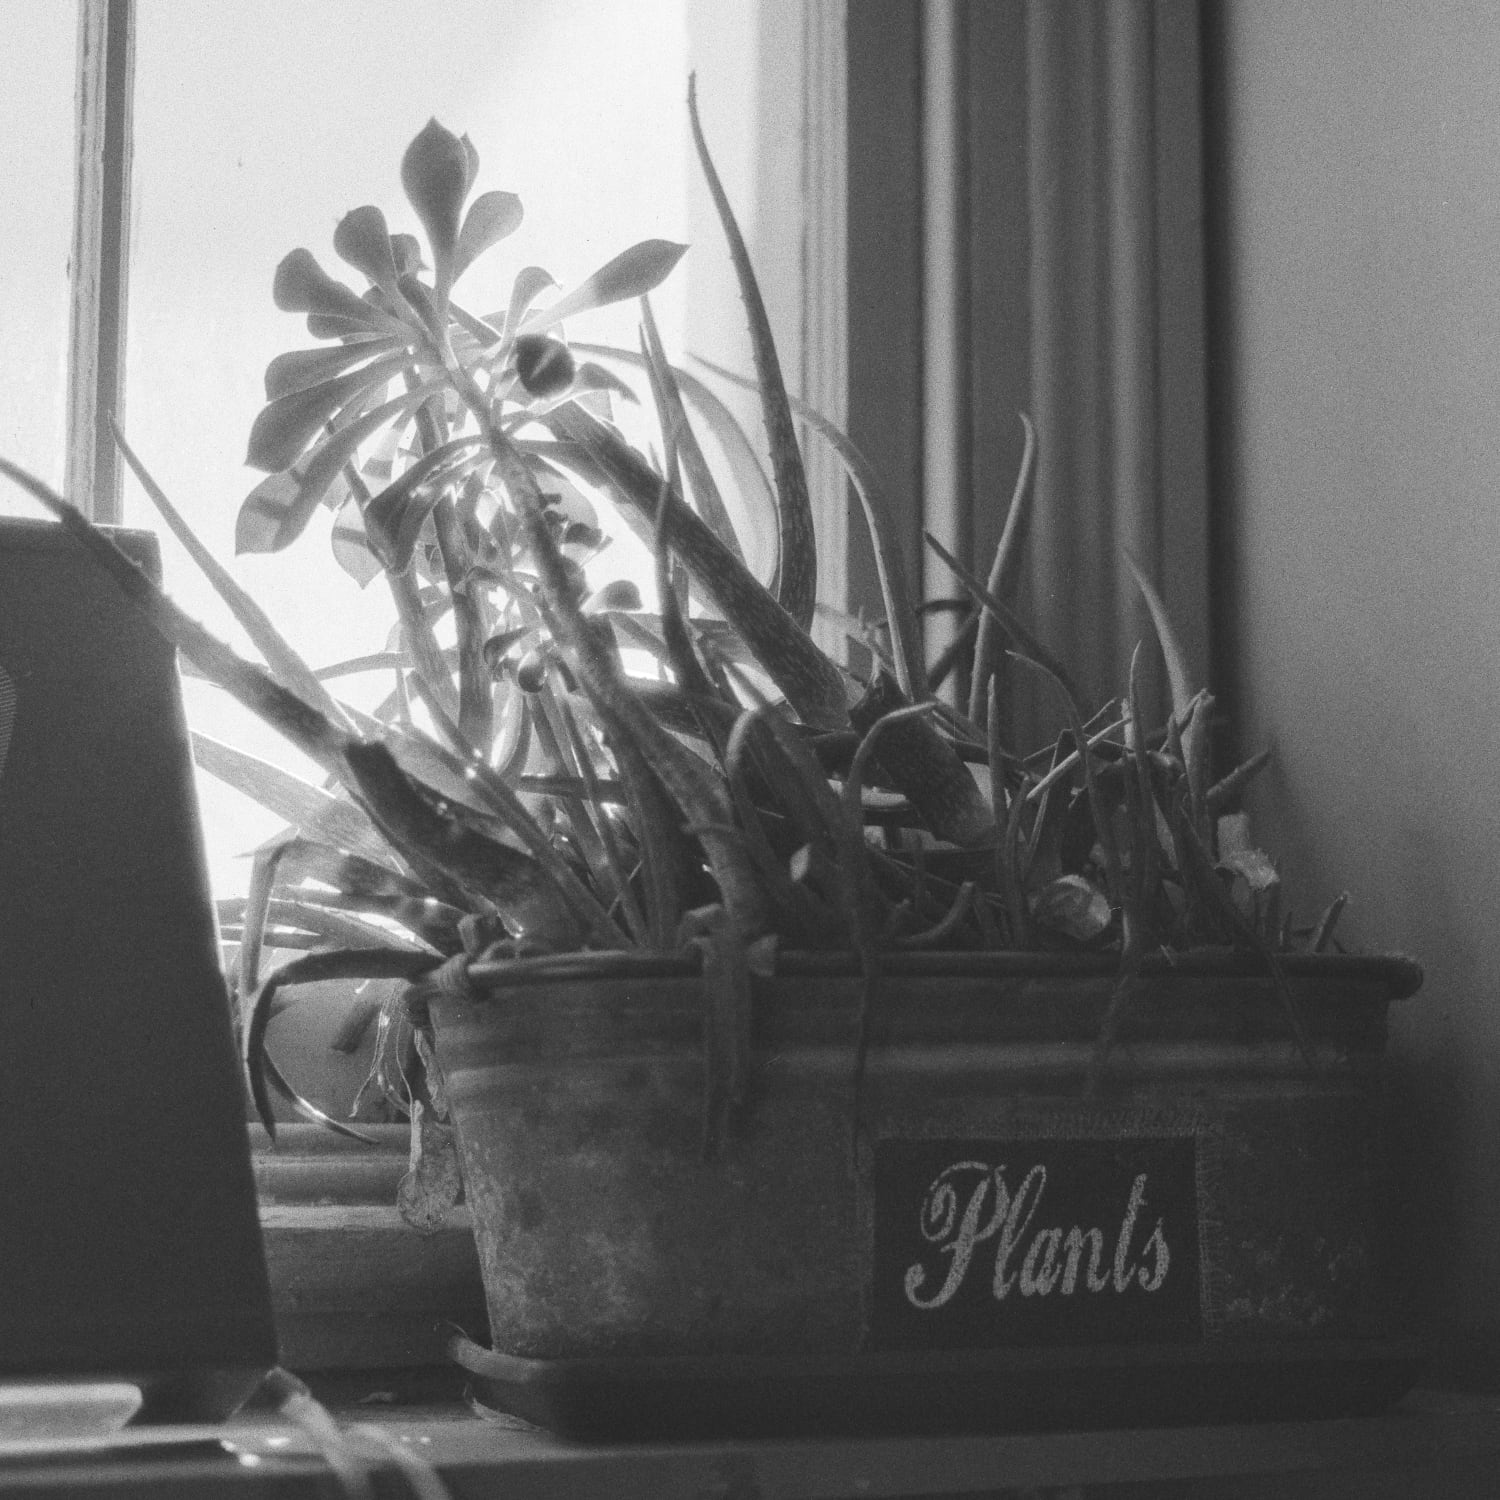 Plants in a flower pot